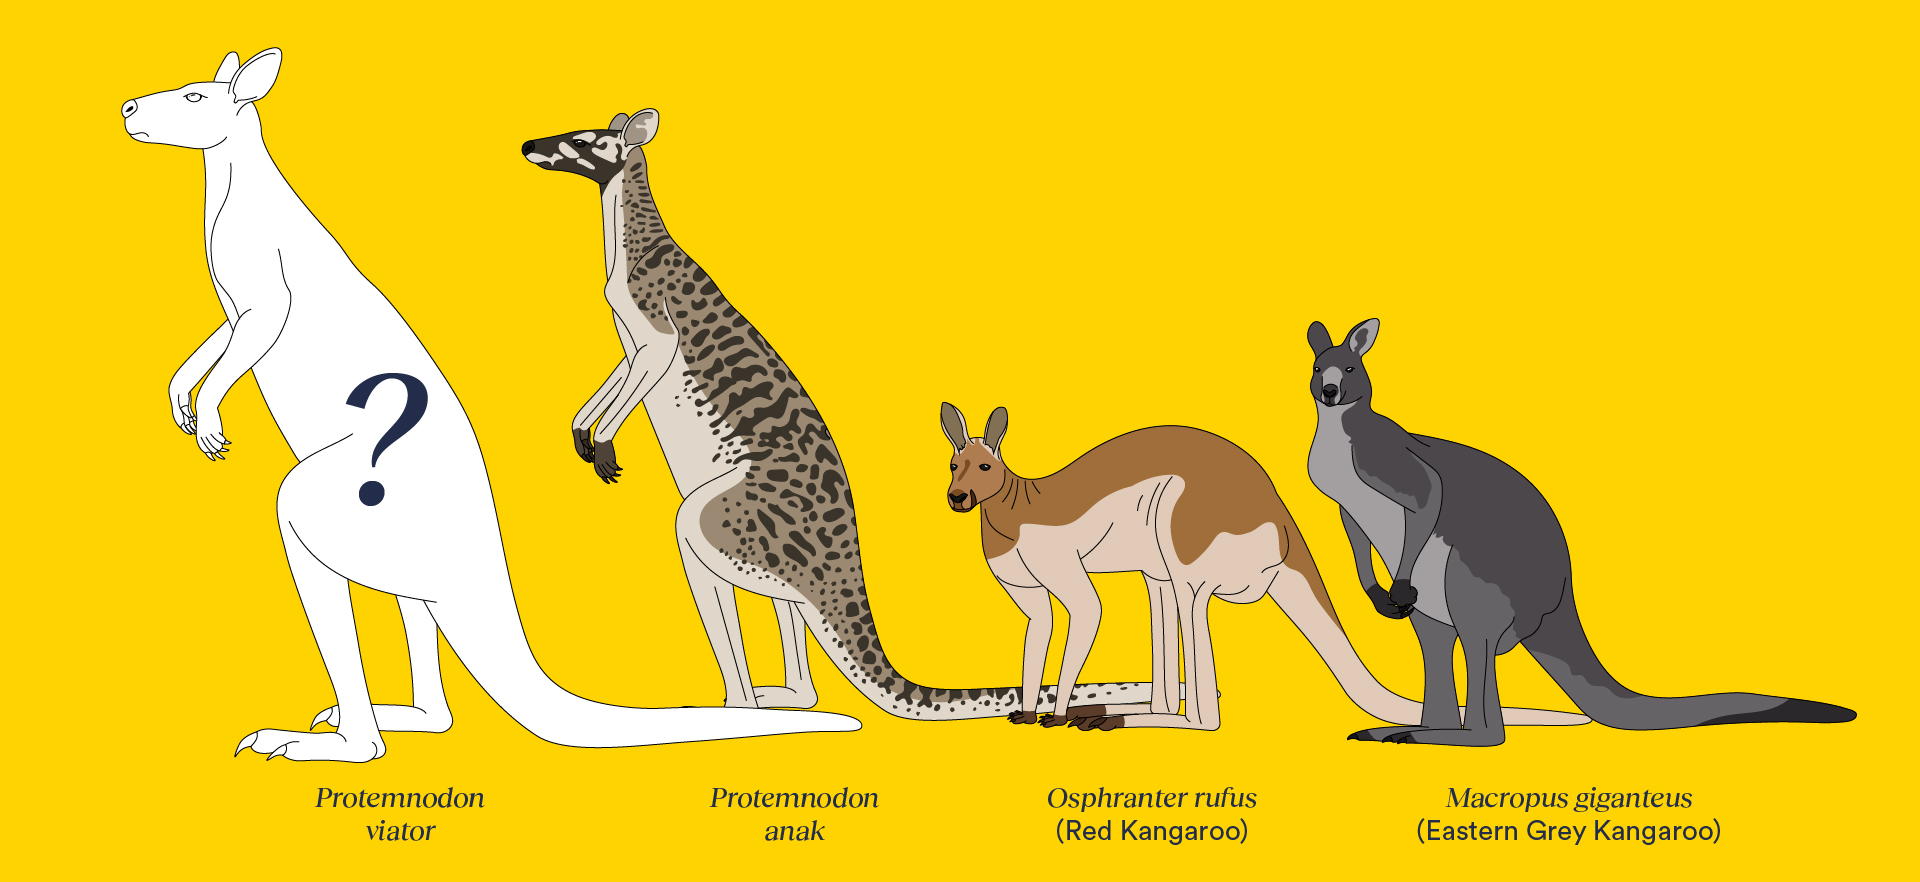 Gigantikus erszényesek járták egykor Ausztráliát